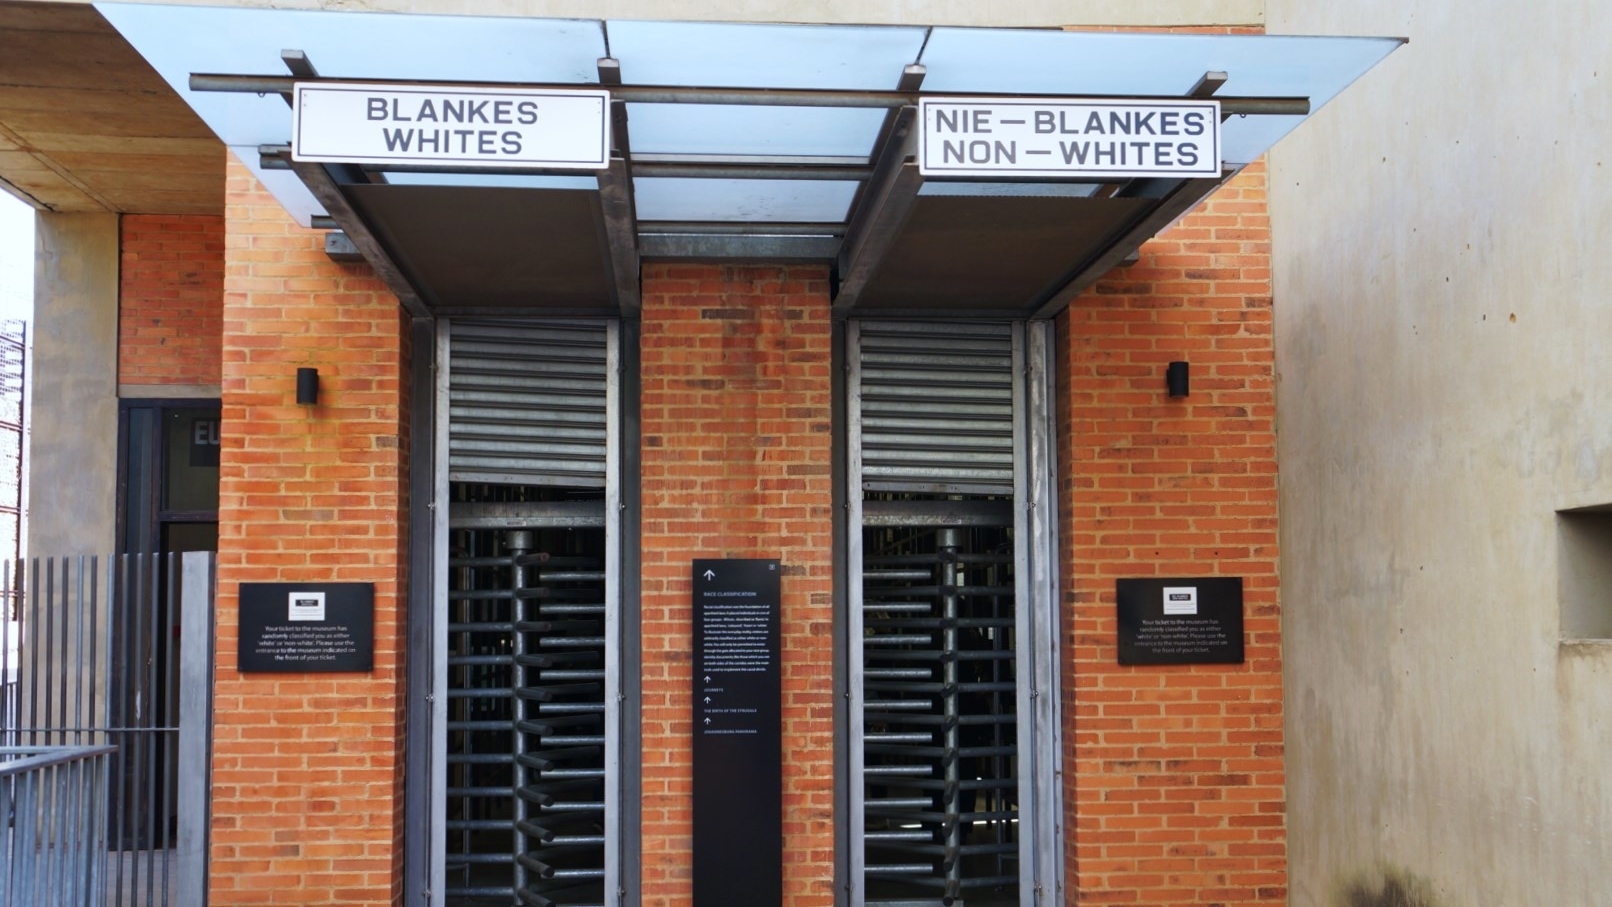 apartheid-museum-whites-nonwhites